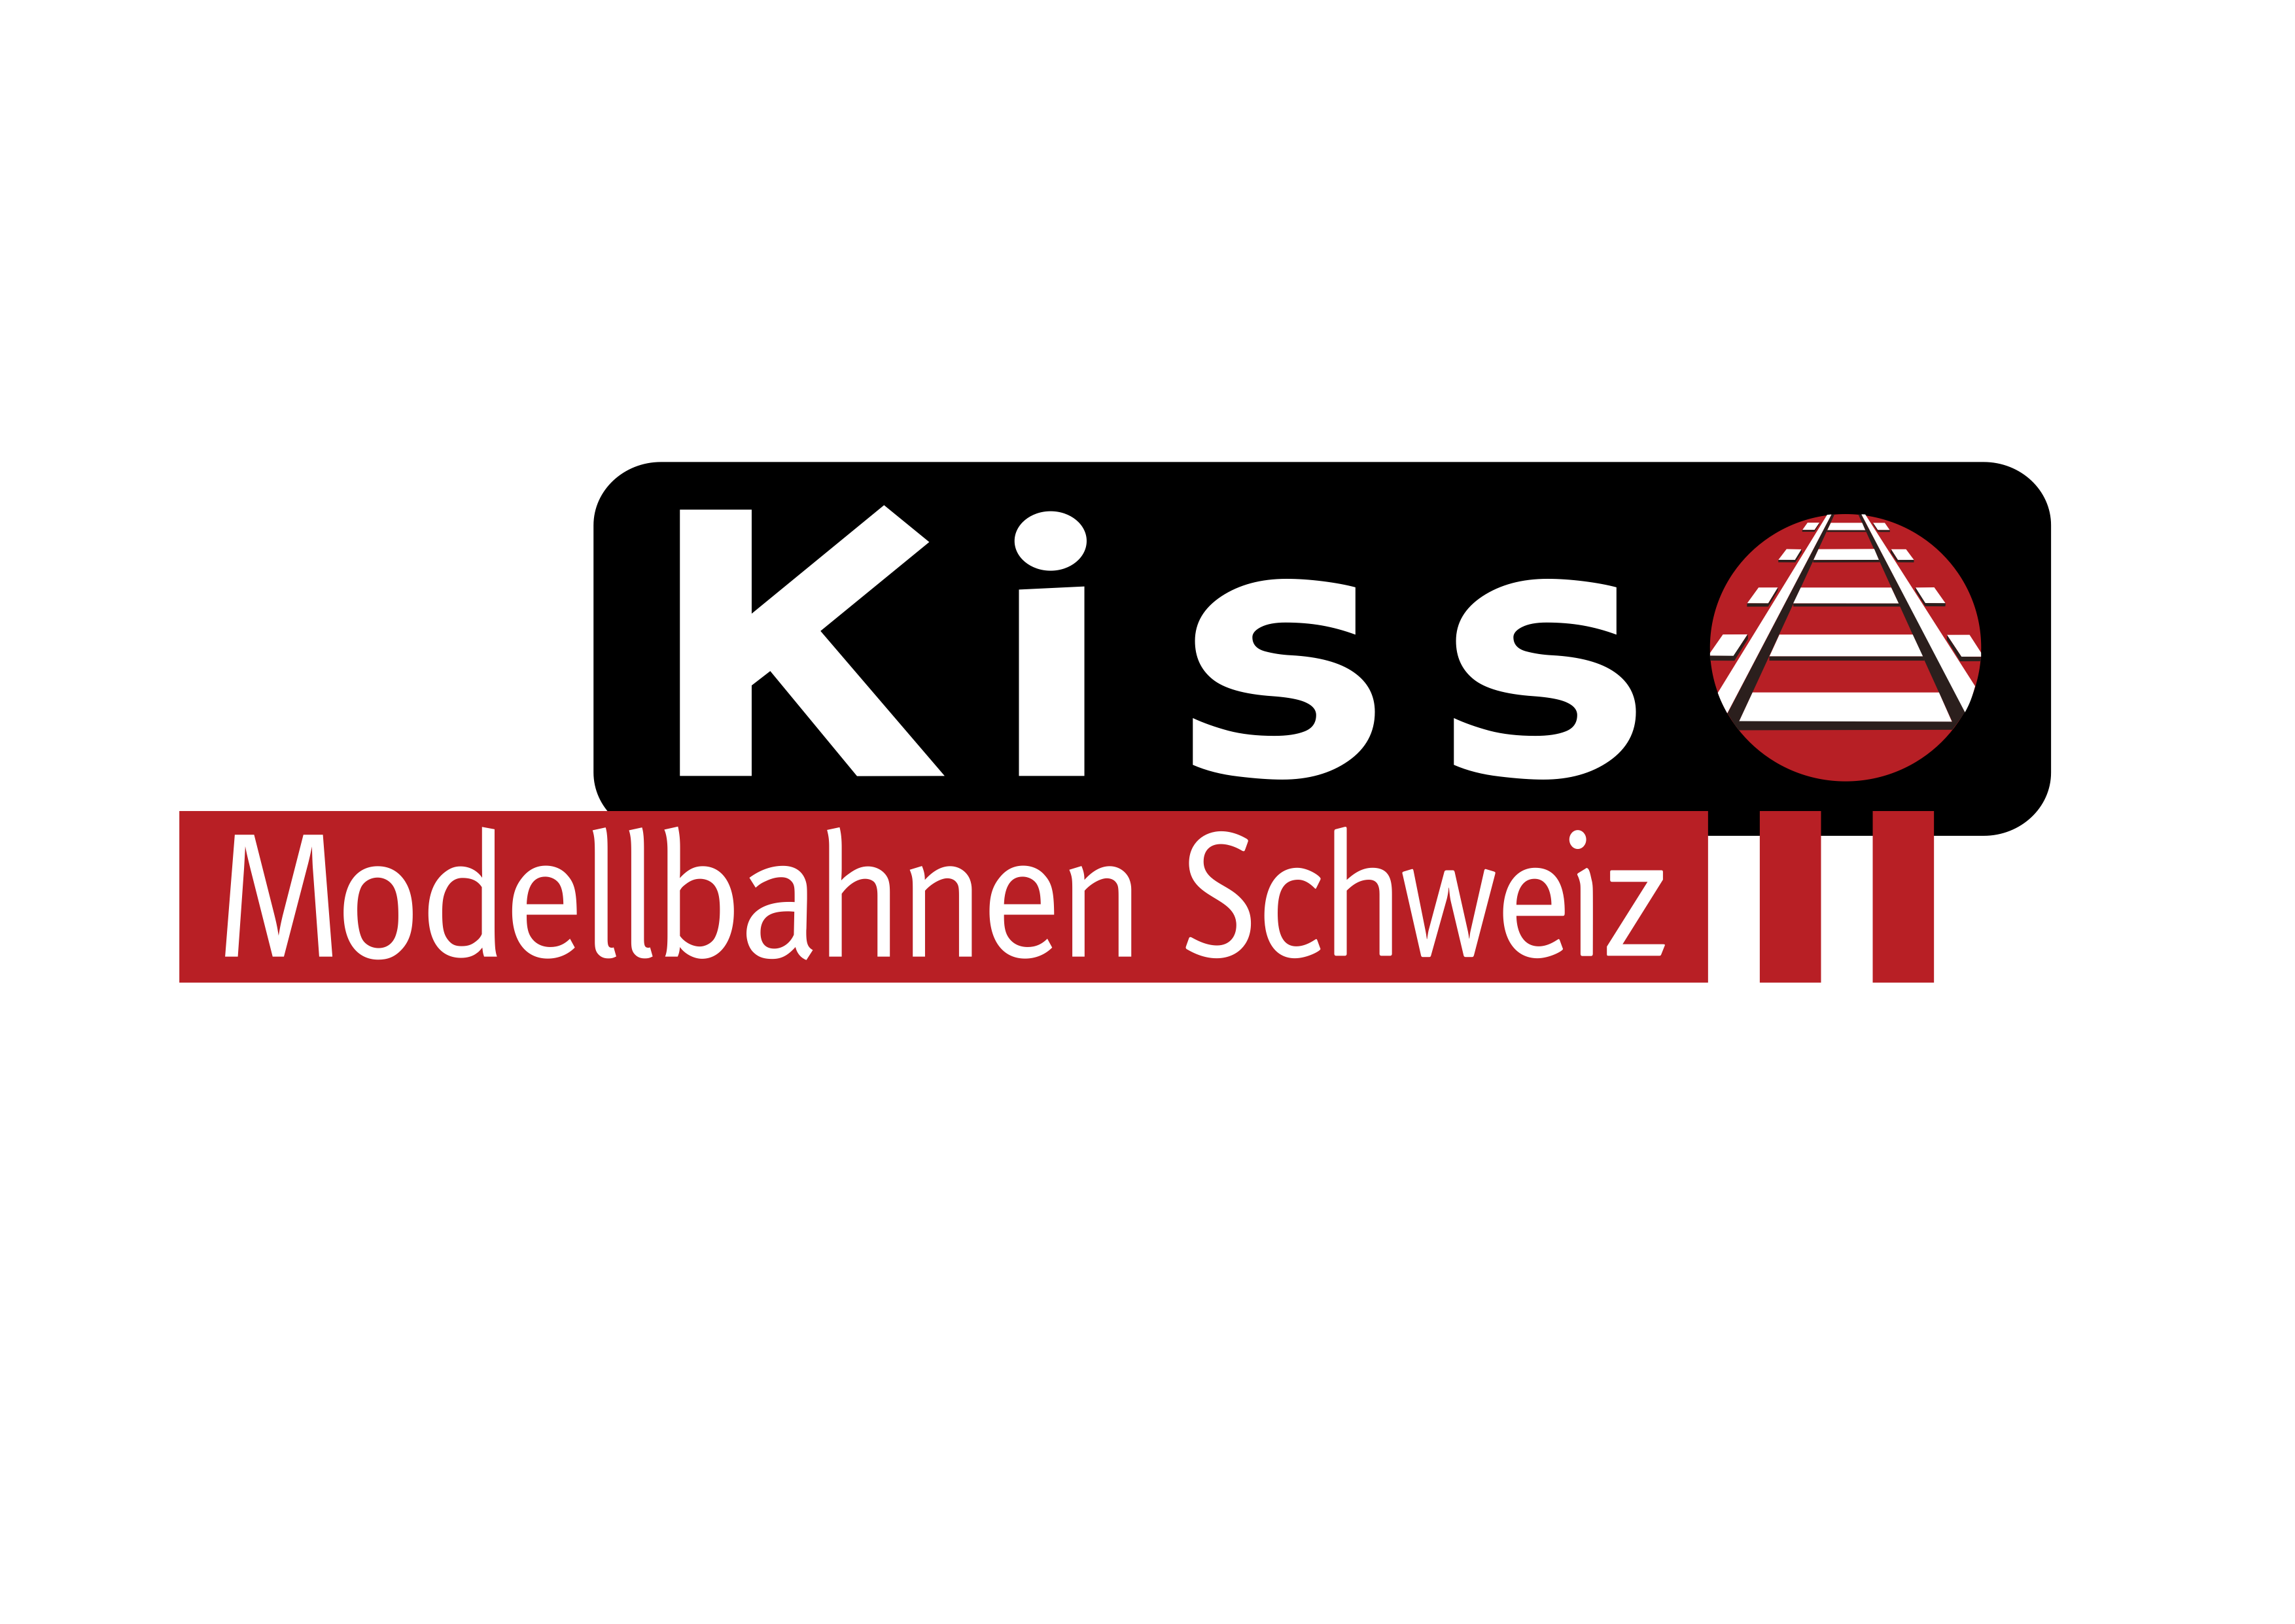 (c) Kiss-modellbahnen-schweiz.ch